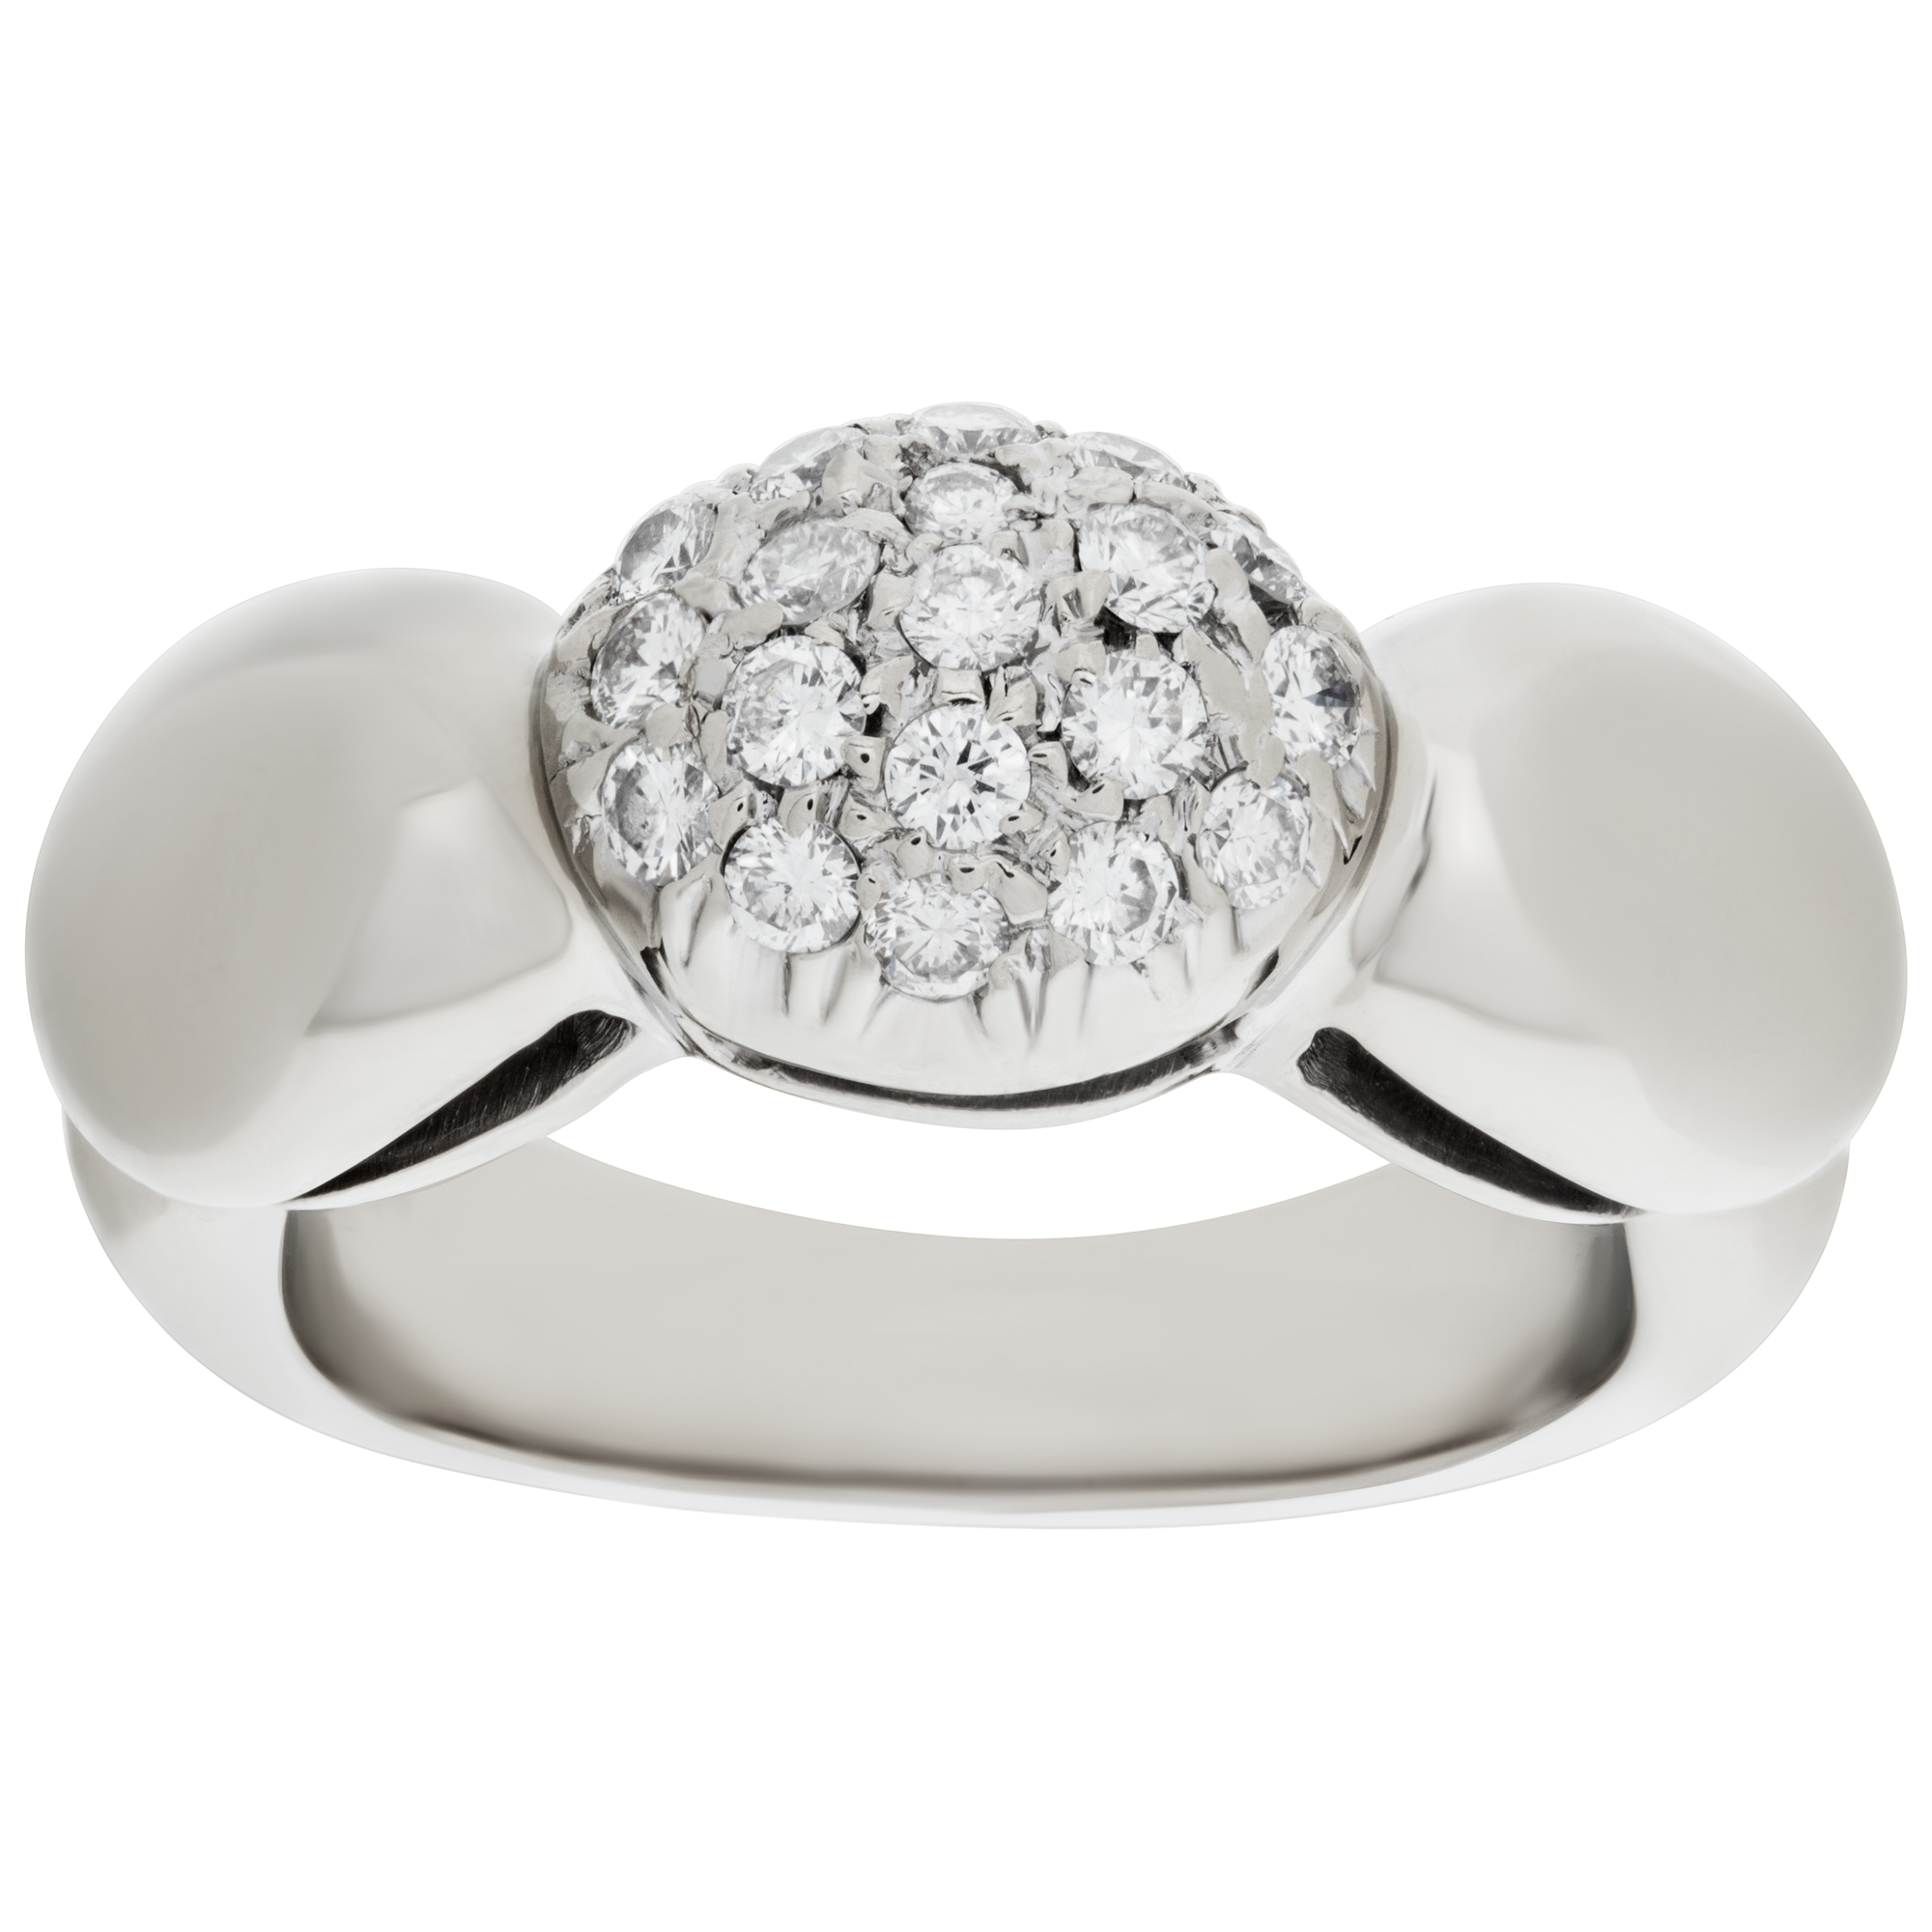 Darling domed diamond ring in 18k white gold. 0.38 carat diamonds. Size 3. image 1